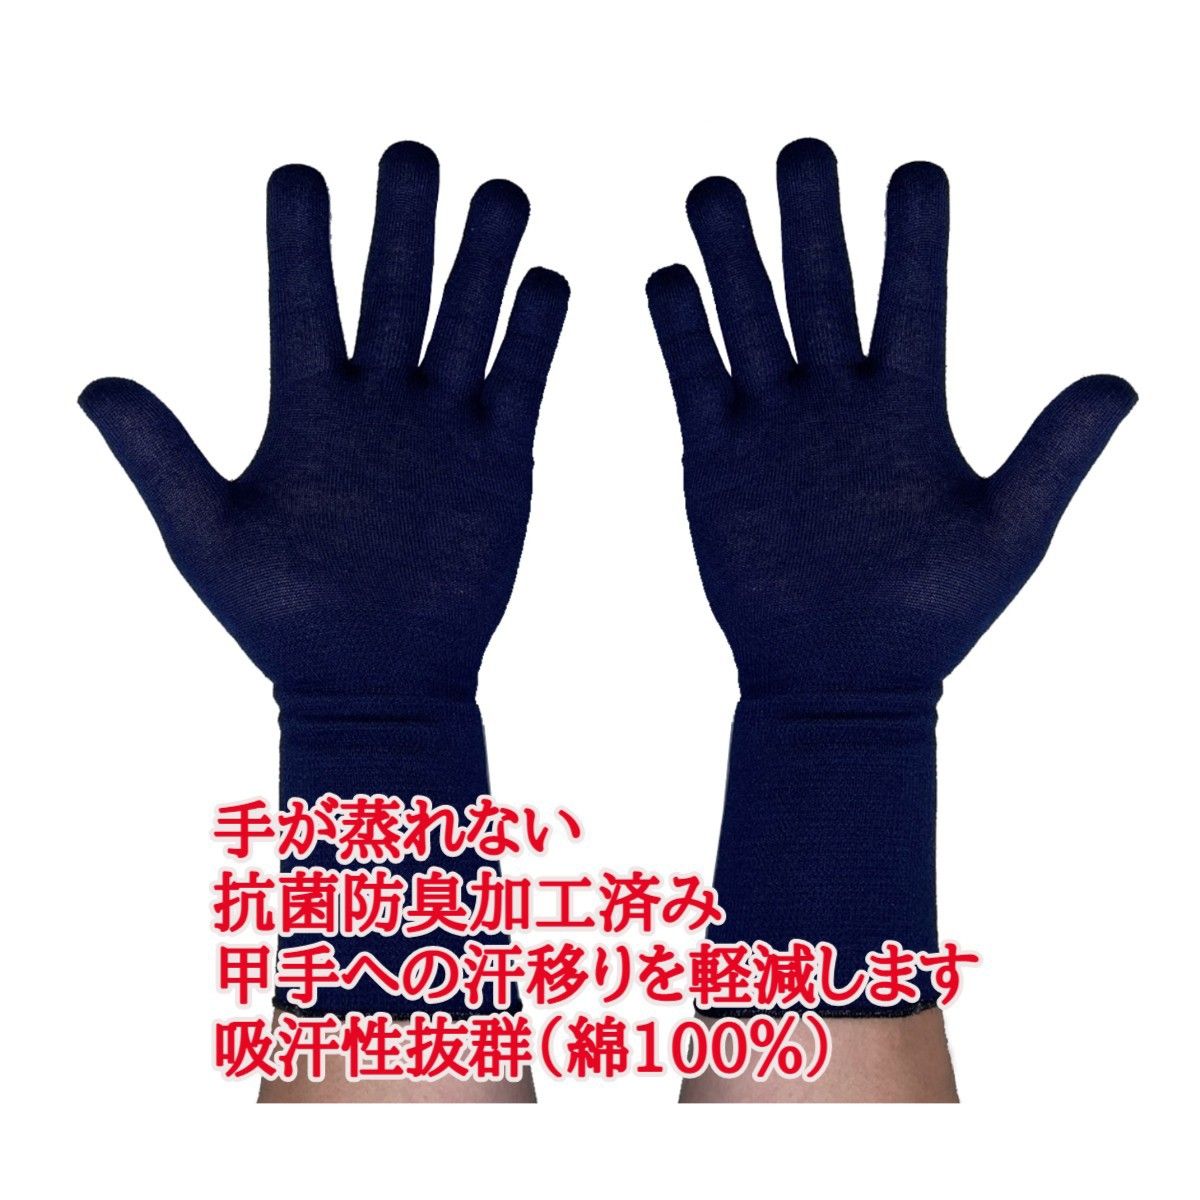 日本製　抗菌防臭加工済みの甲手下手袋  5本指  3組セット